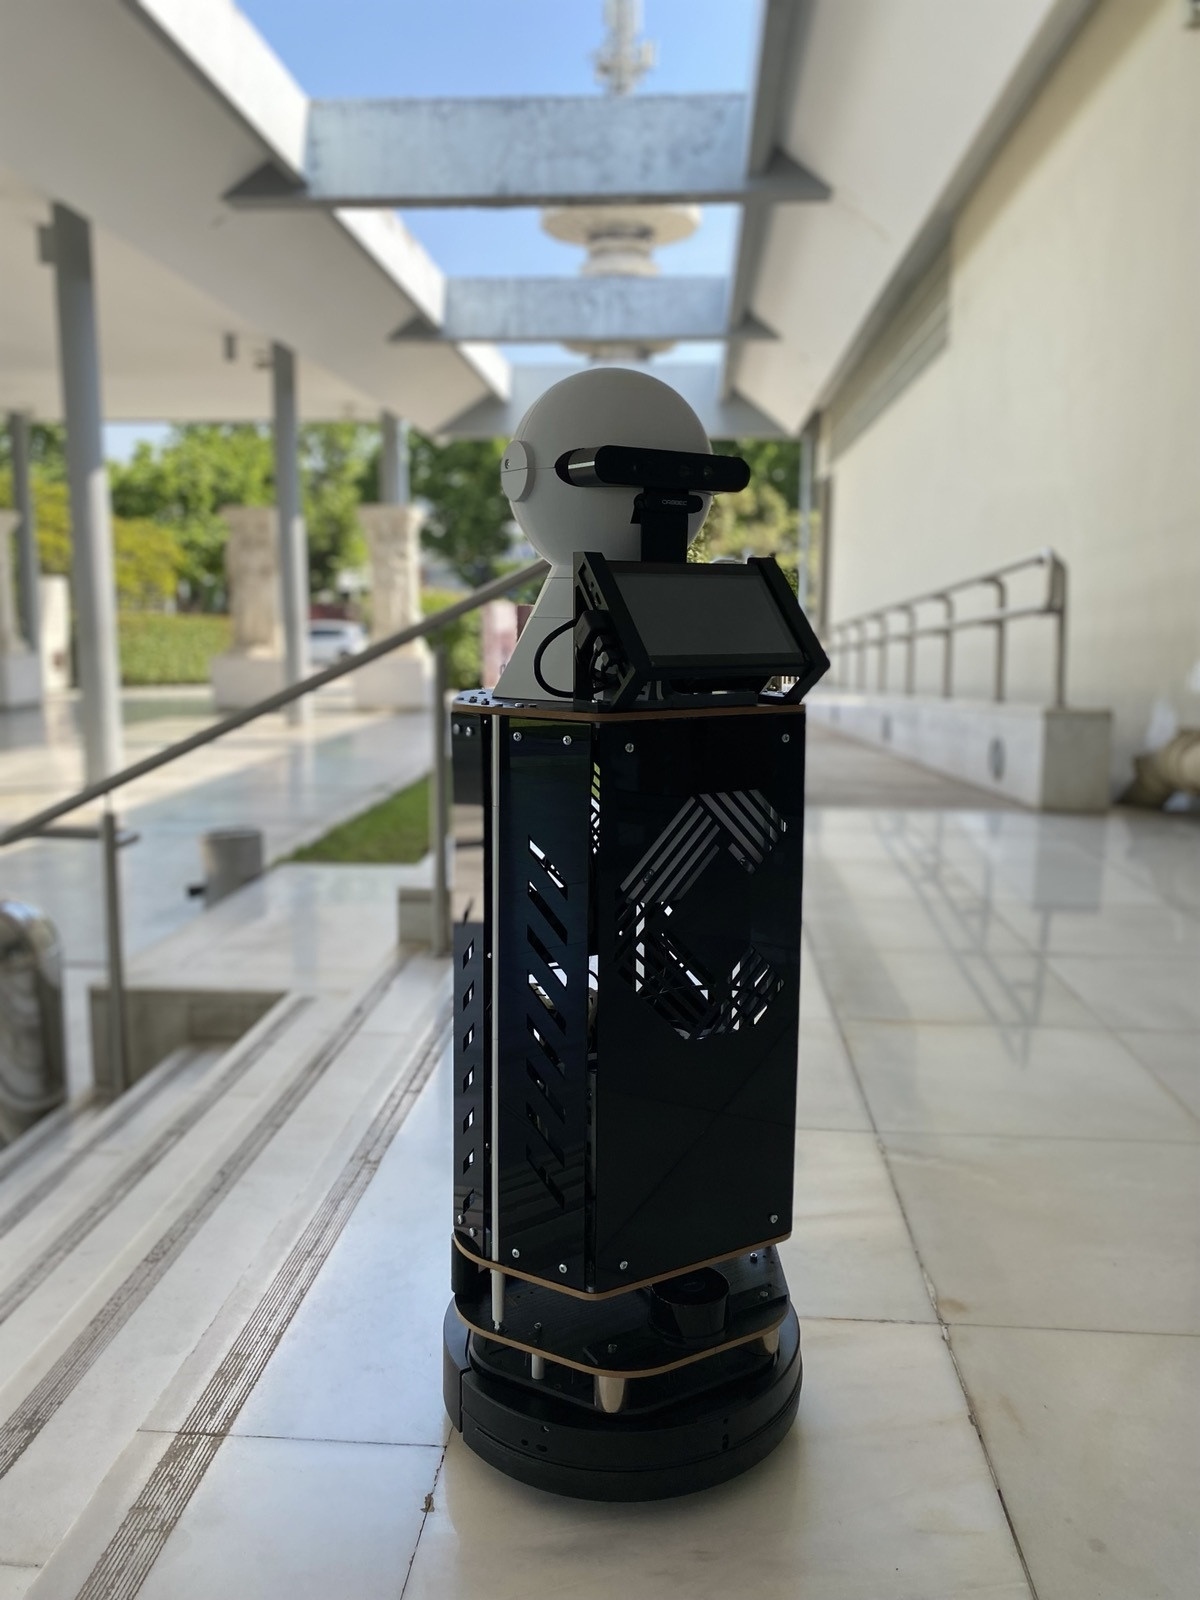 Θεσσαλονίκη: Ένα ρομπότ πιάνει κουβέντα με τους επισκέπτες